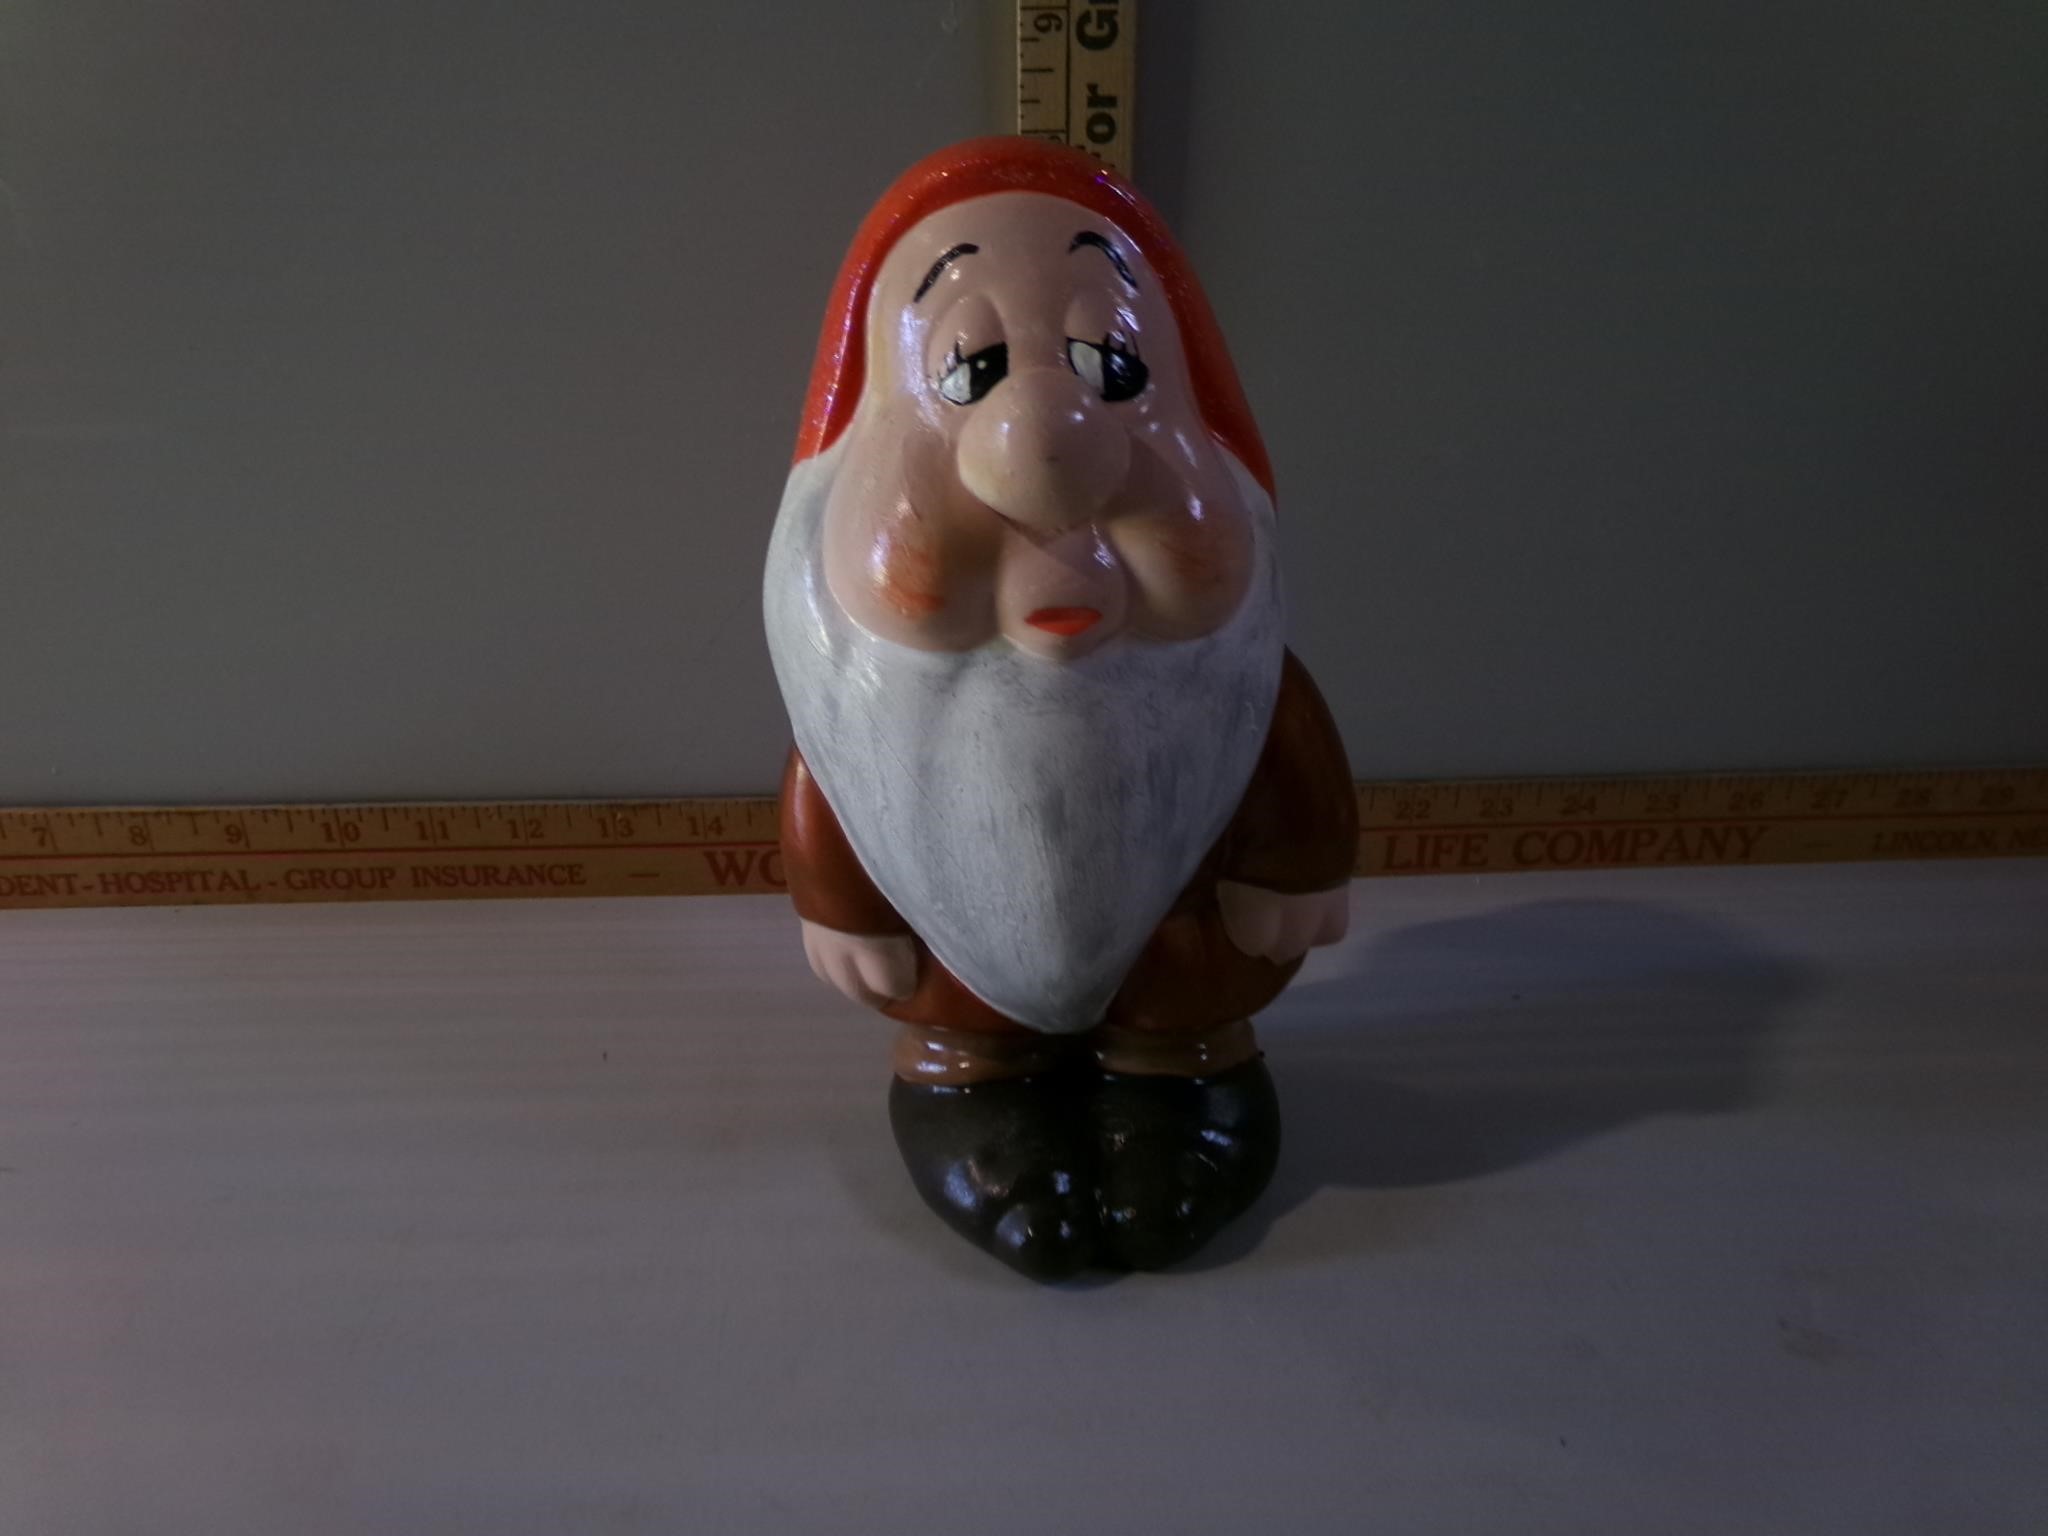 Approx 8" ceramic Disney figurine, Dwarf